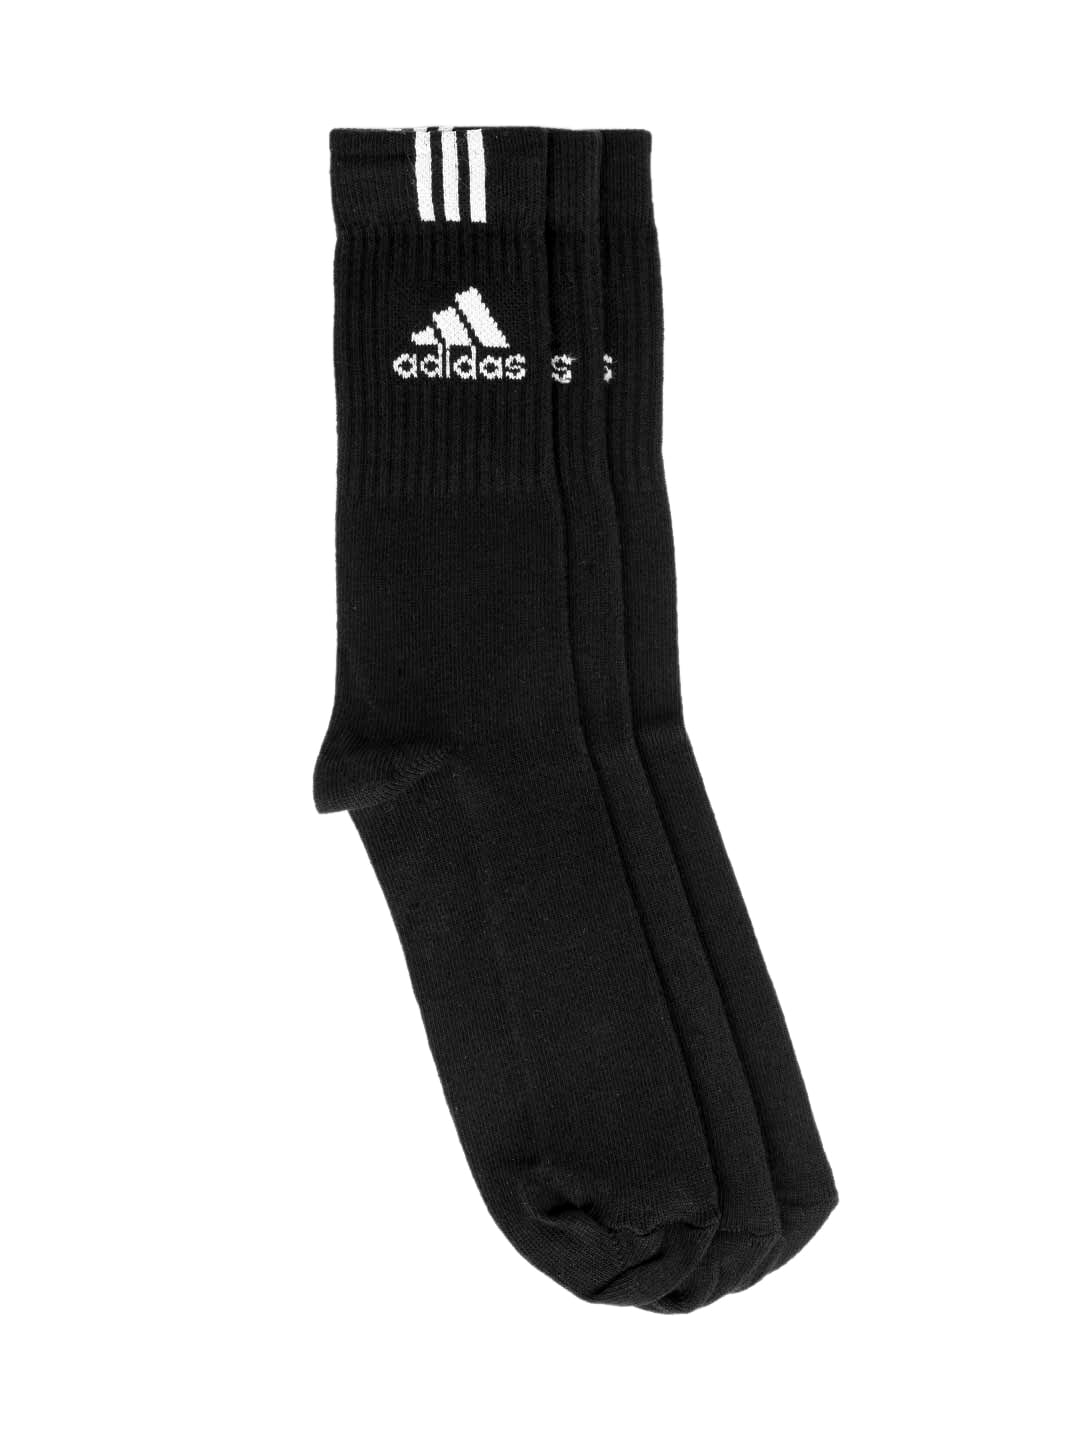 ADIDAS Unisex Pack of 3 Black Socks